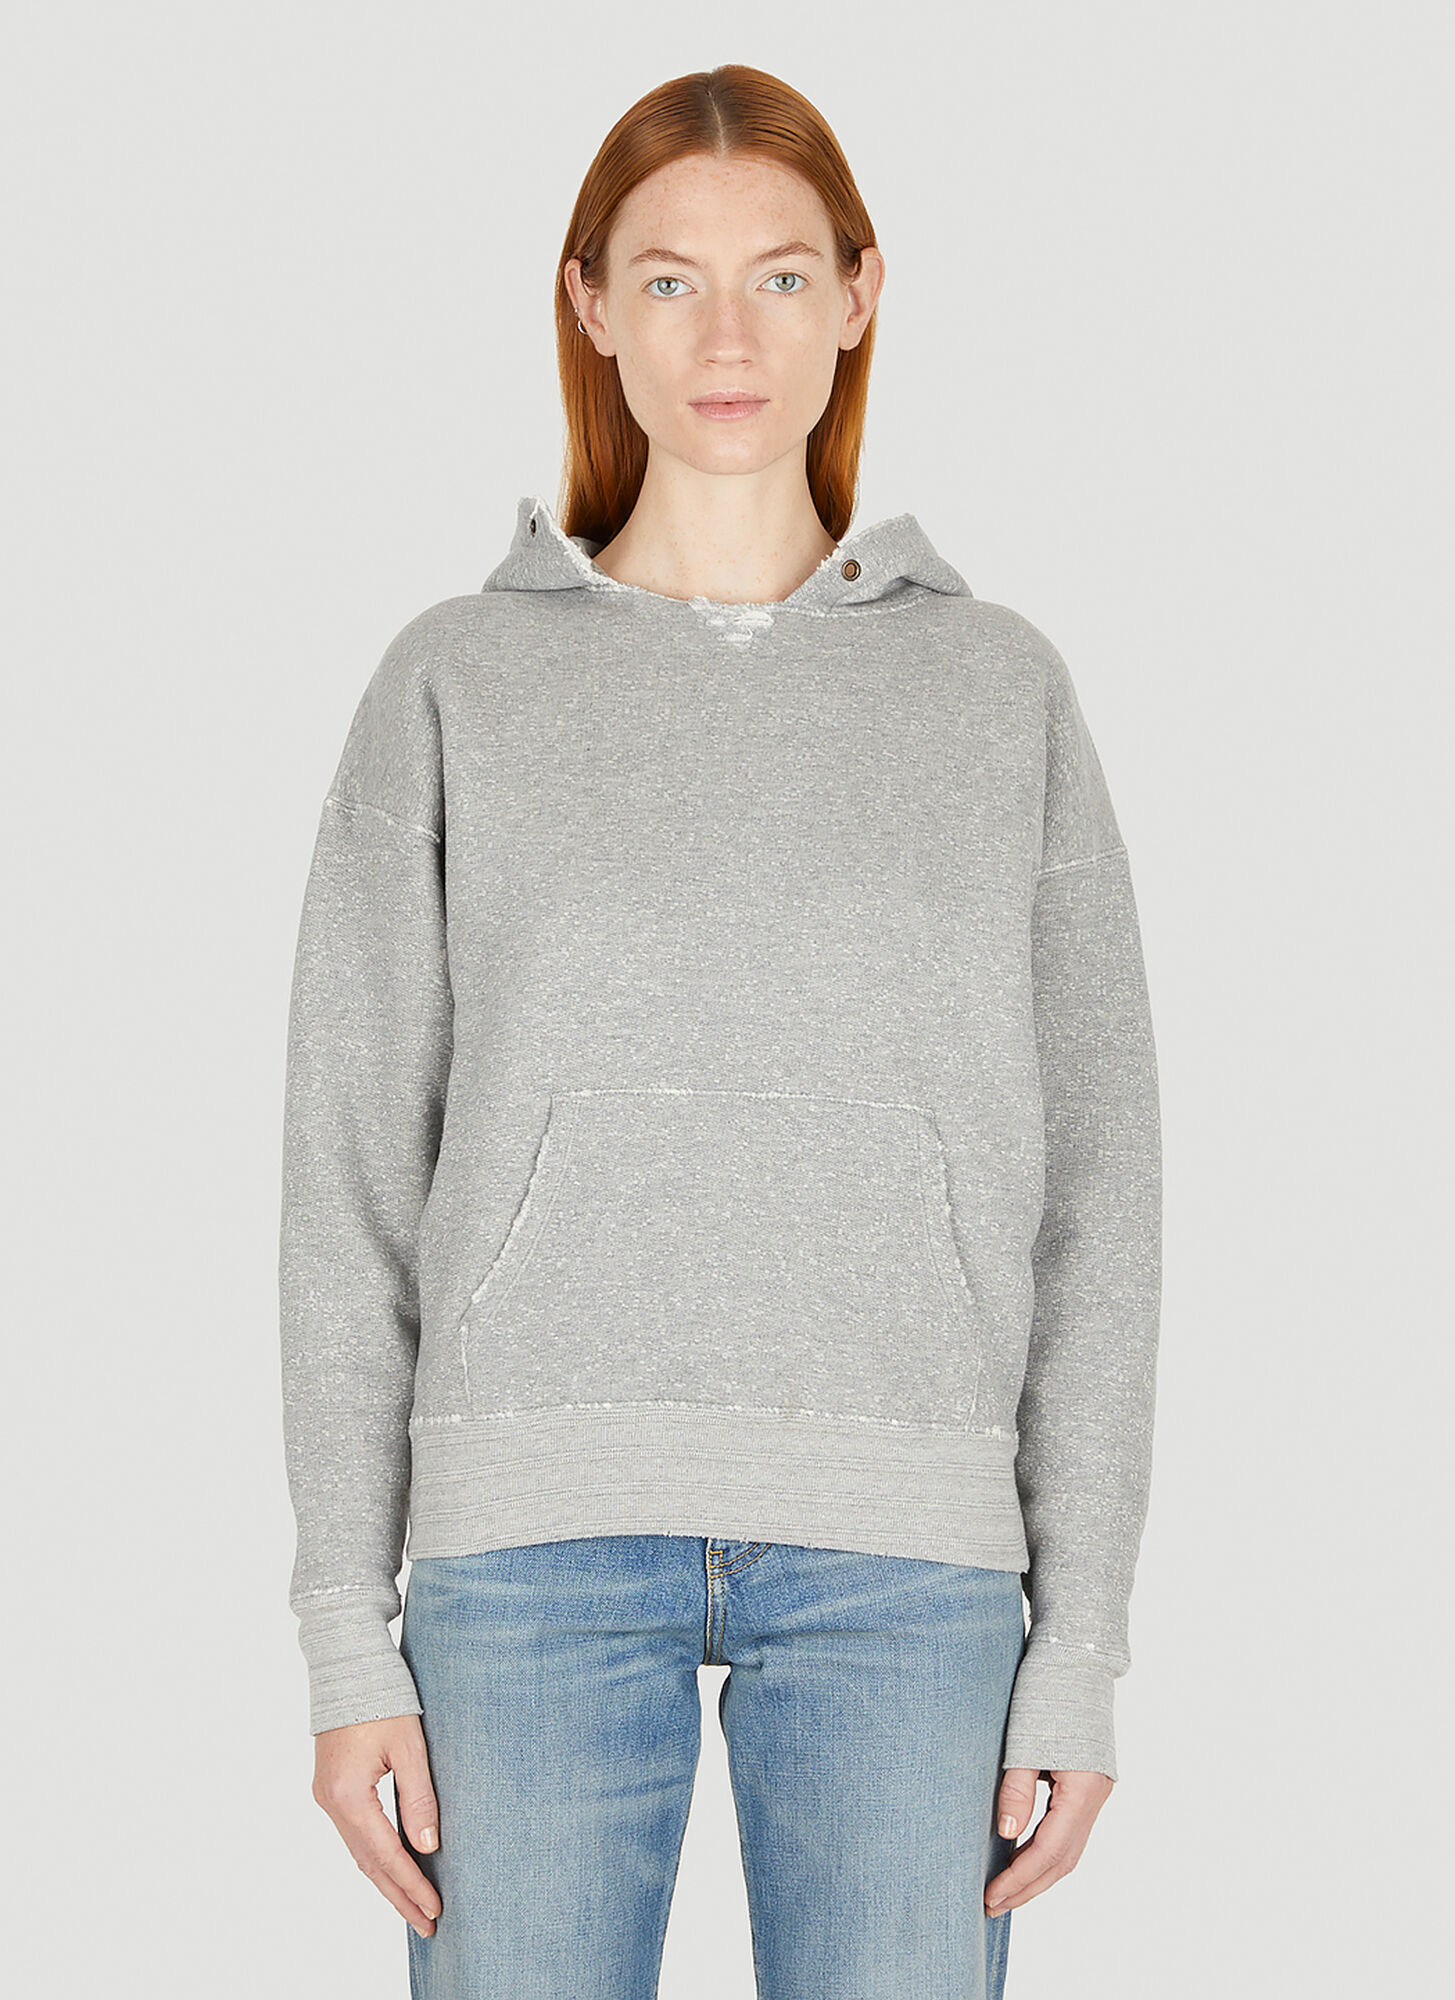 Saint Laurent Distressed Hooded Sweatshirt In Grey